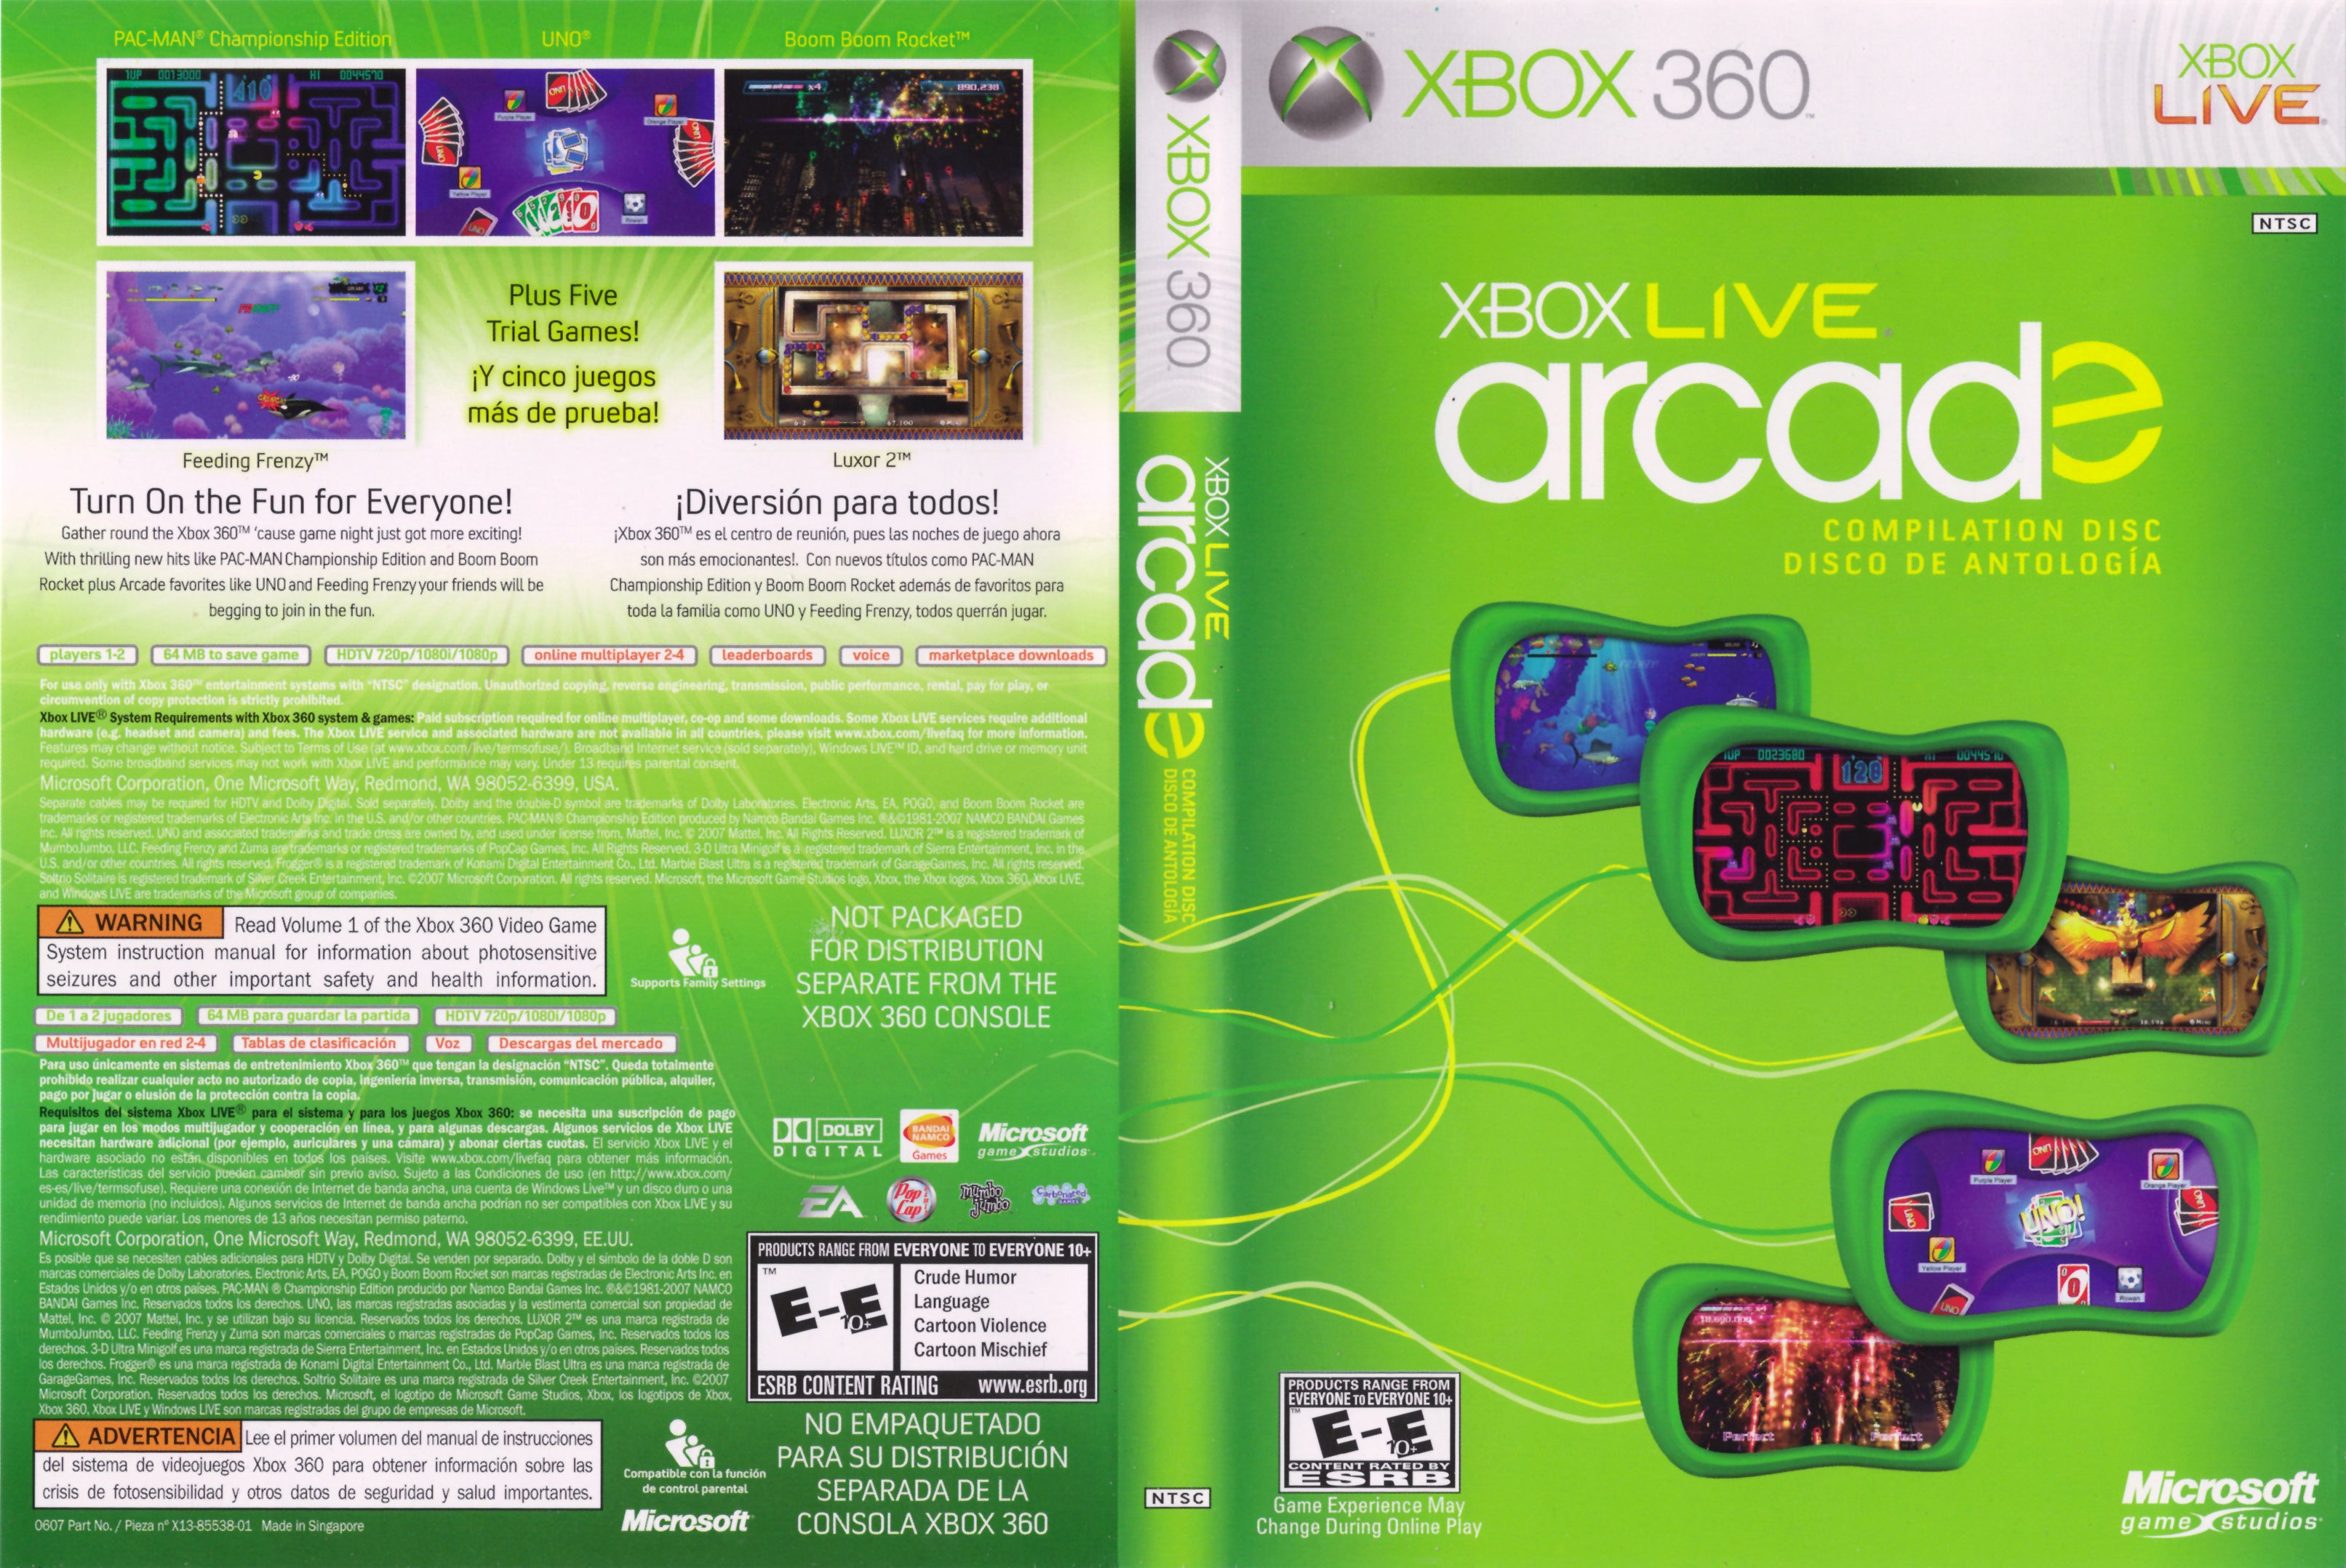 Игры 360 live. Xbox Live Xbox 360. Xbox Arcade 360 игры диск. Xbox 360 Arcade. Xbox Live Arcade Compilation Disc для Xbox 360.